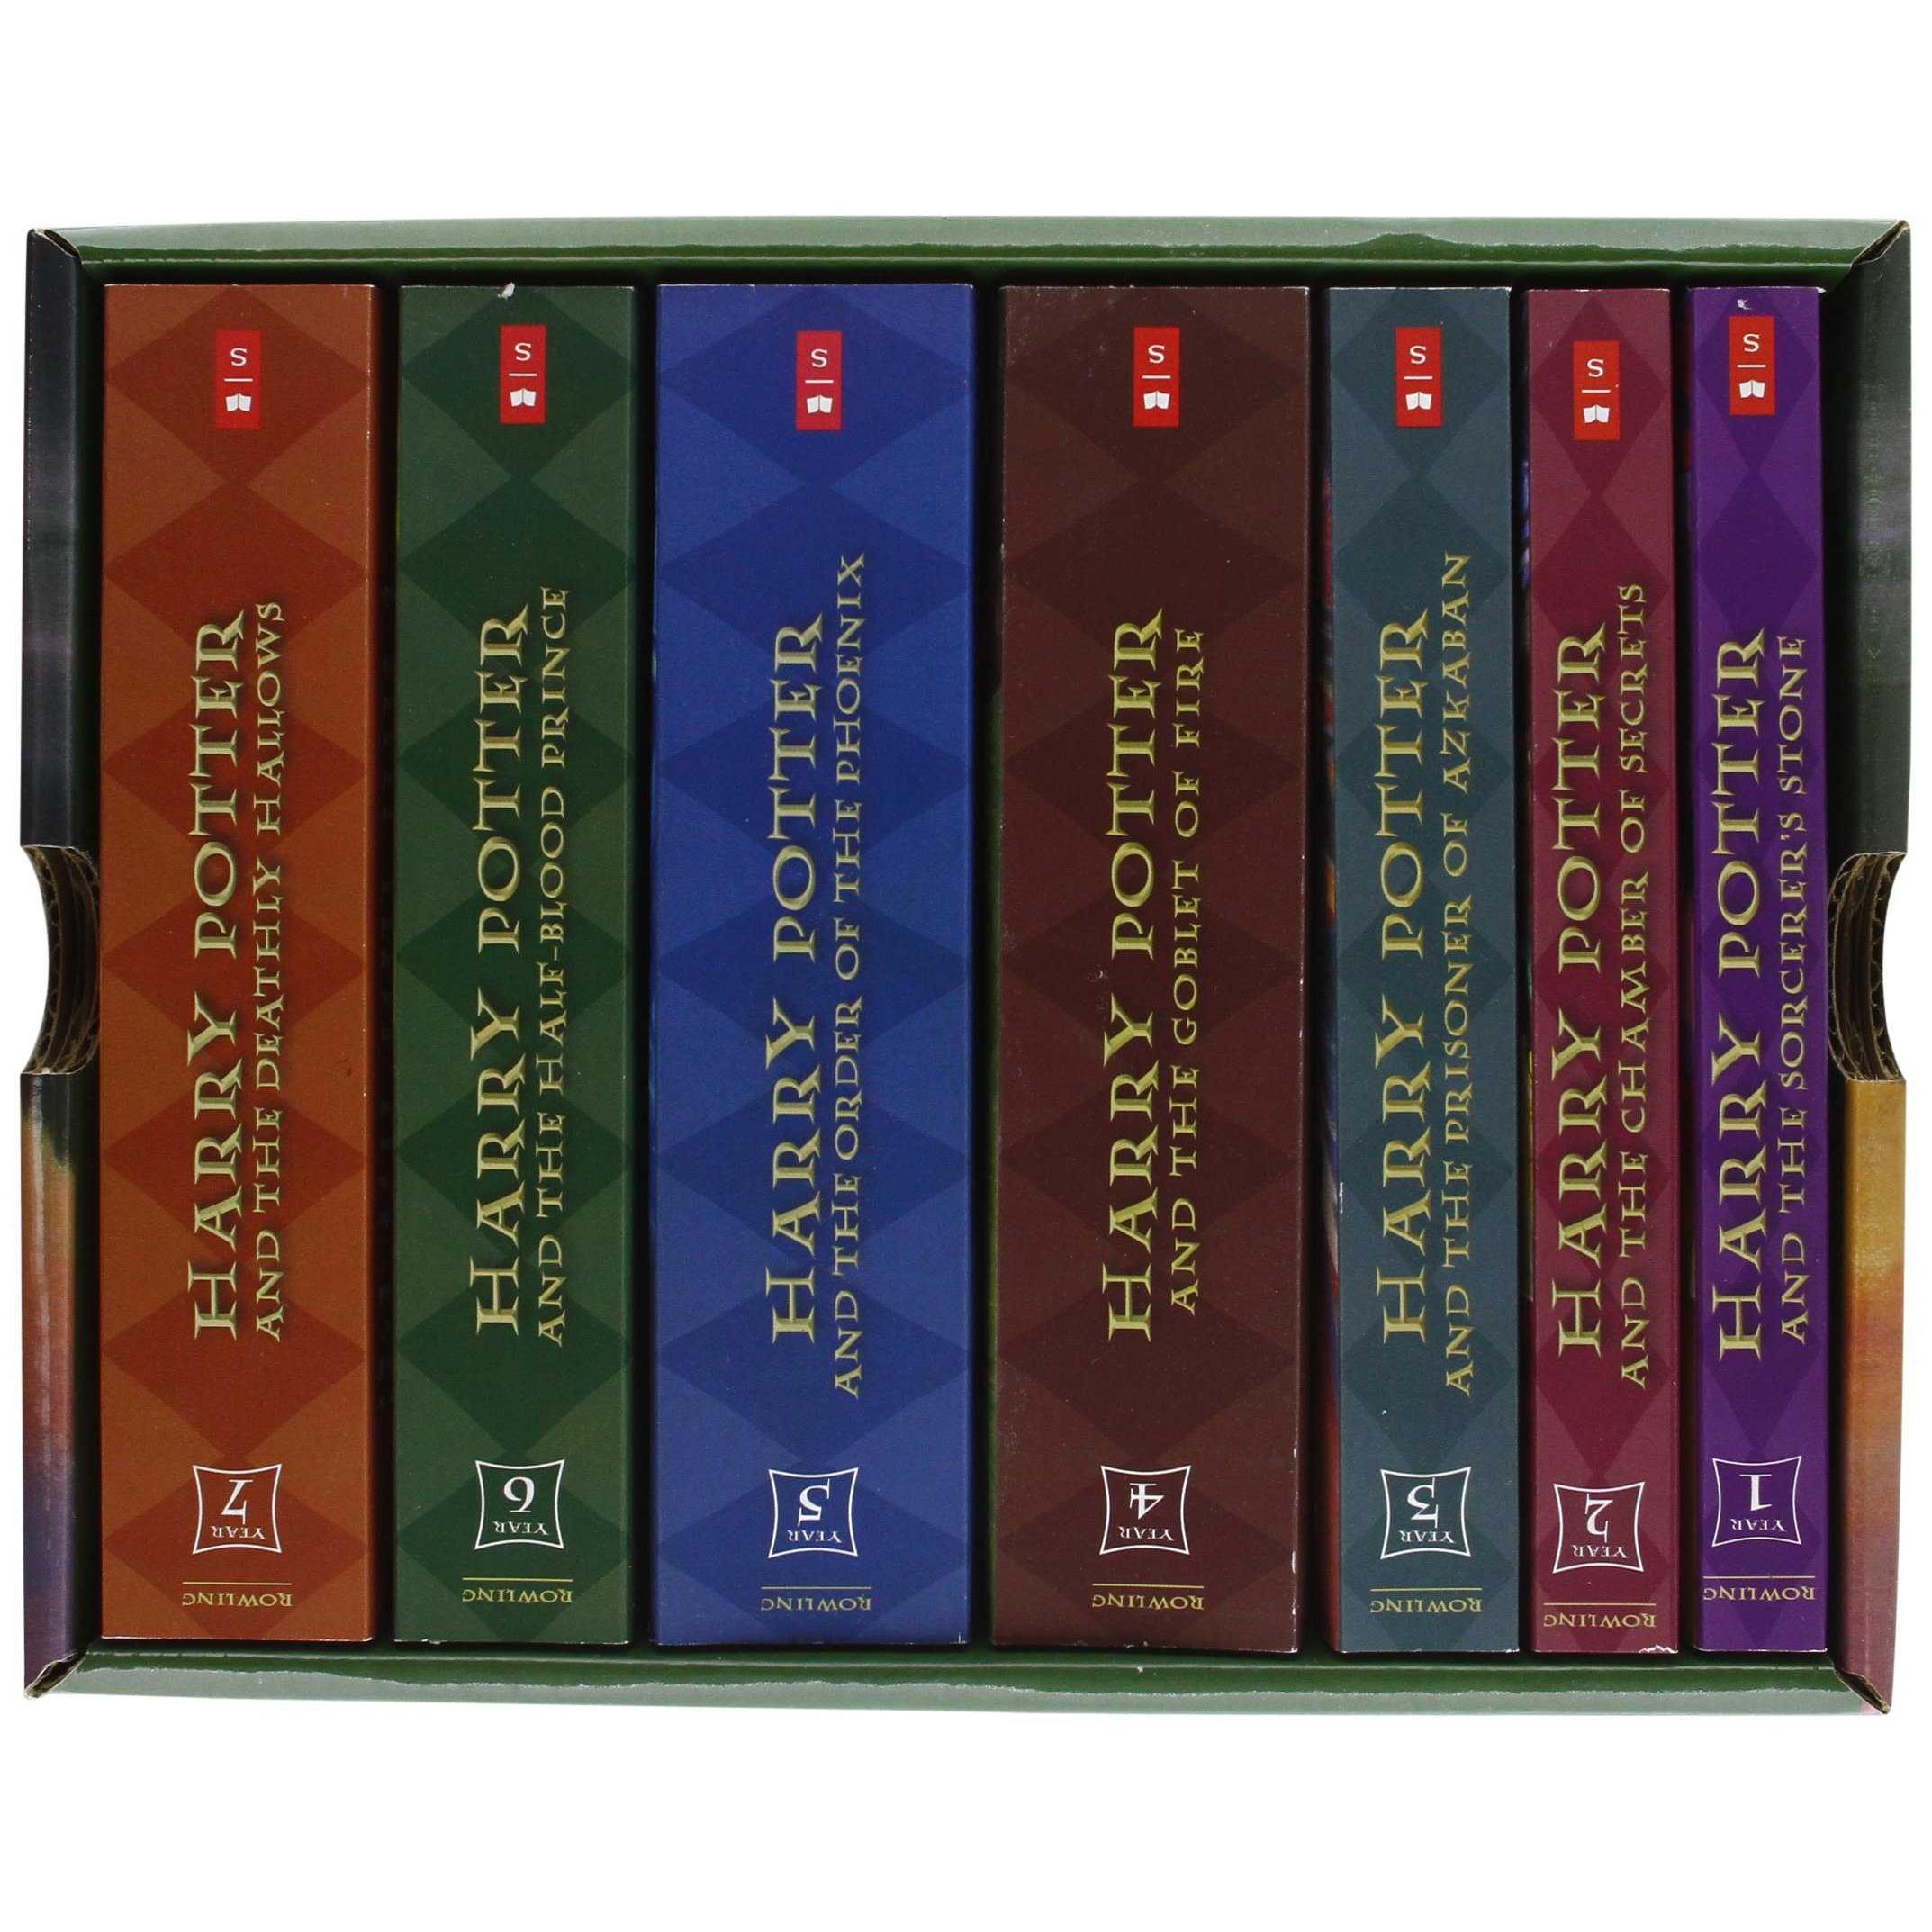 Поттер последовательность книг. Harry Potter books collection.